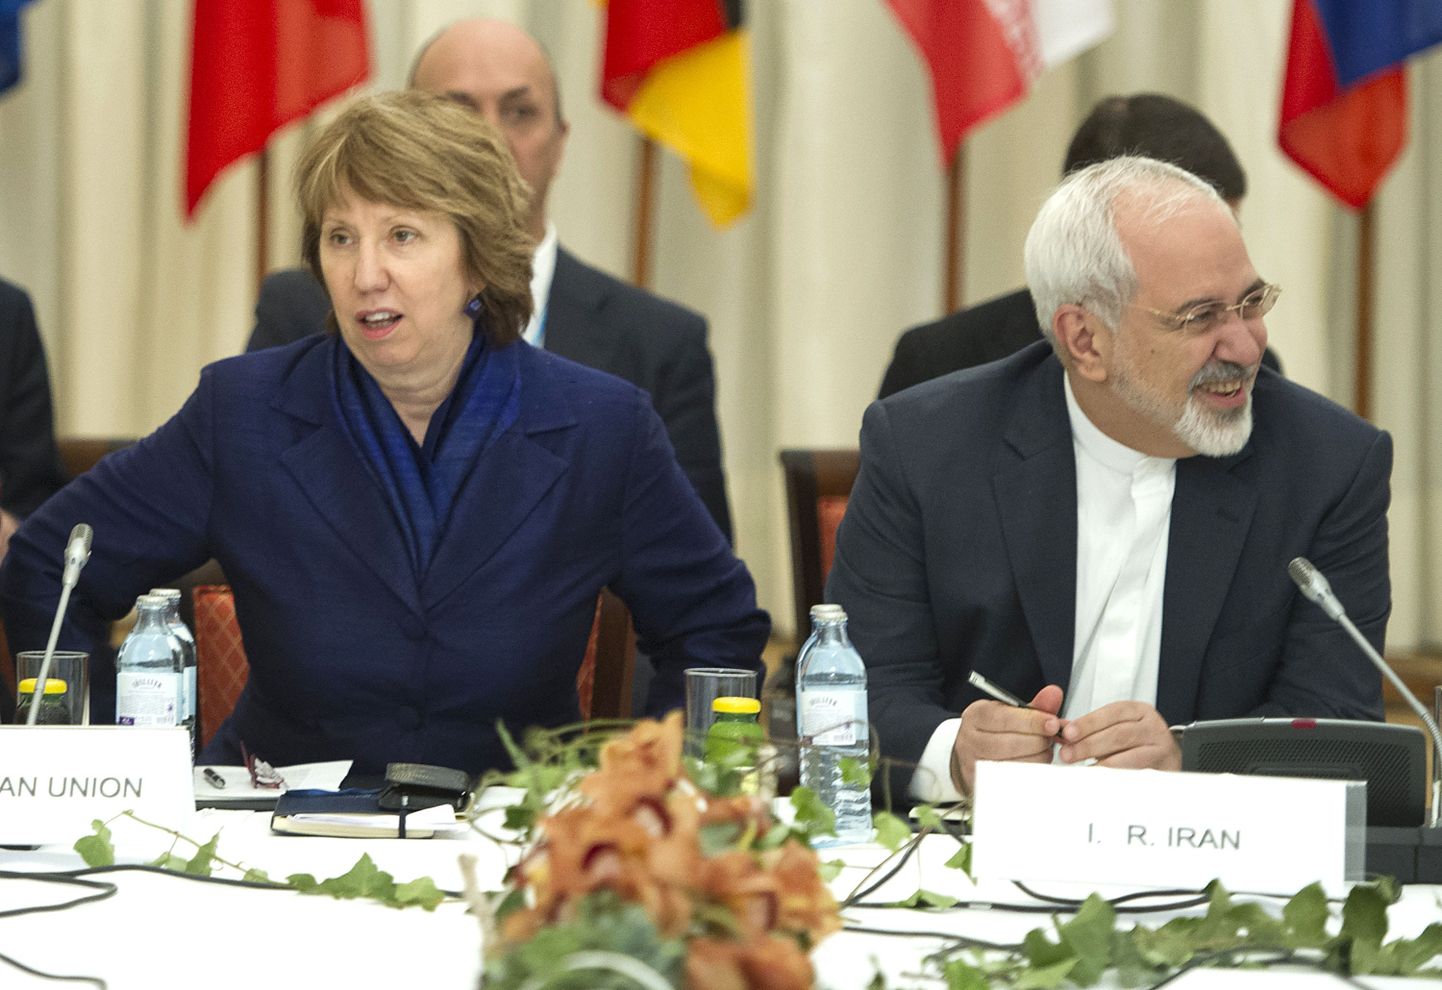 Iraani välisminister Mohammad Javad Zarif ja endine Euroopa Liidu välisasjade kõrge esindaja Catherine Ashton kõnelustelaua taga.